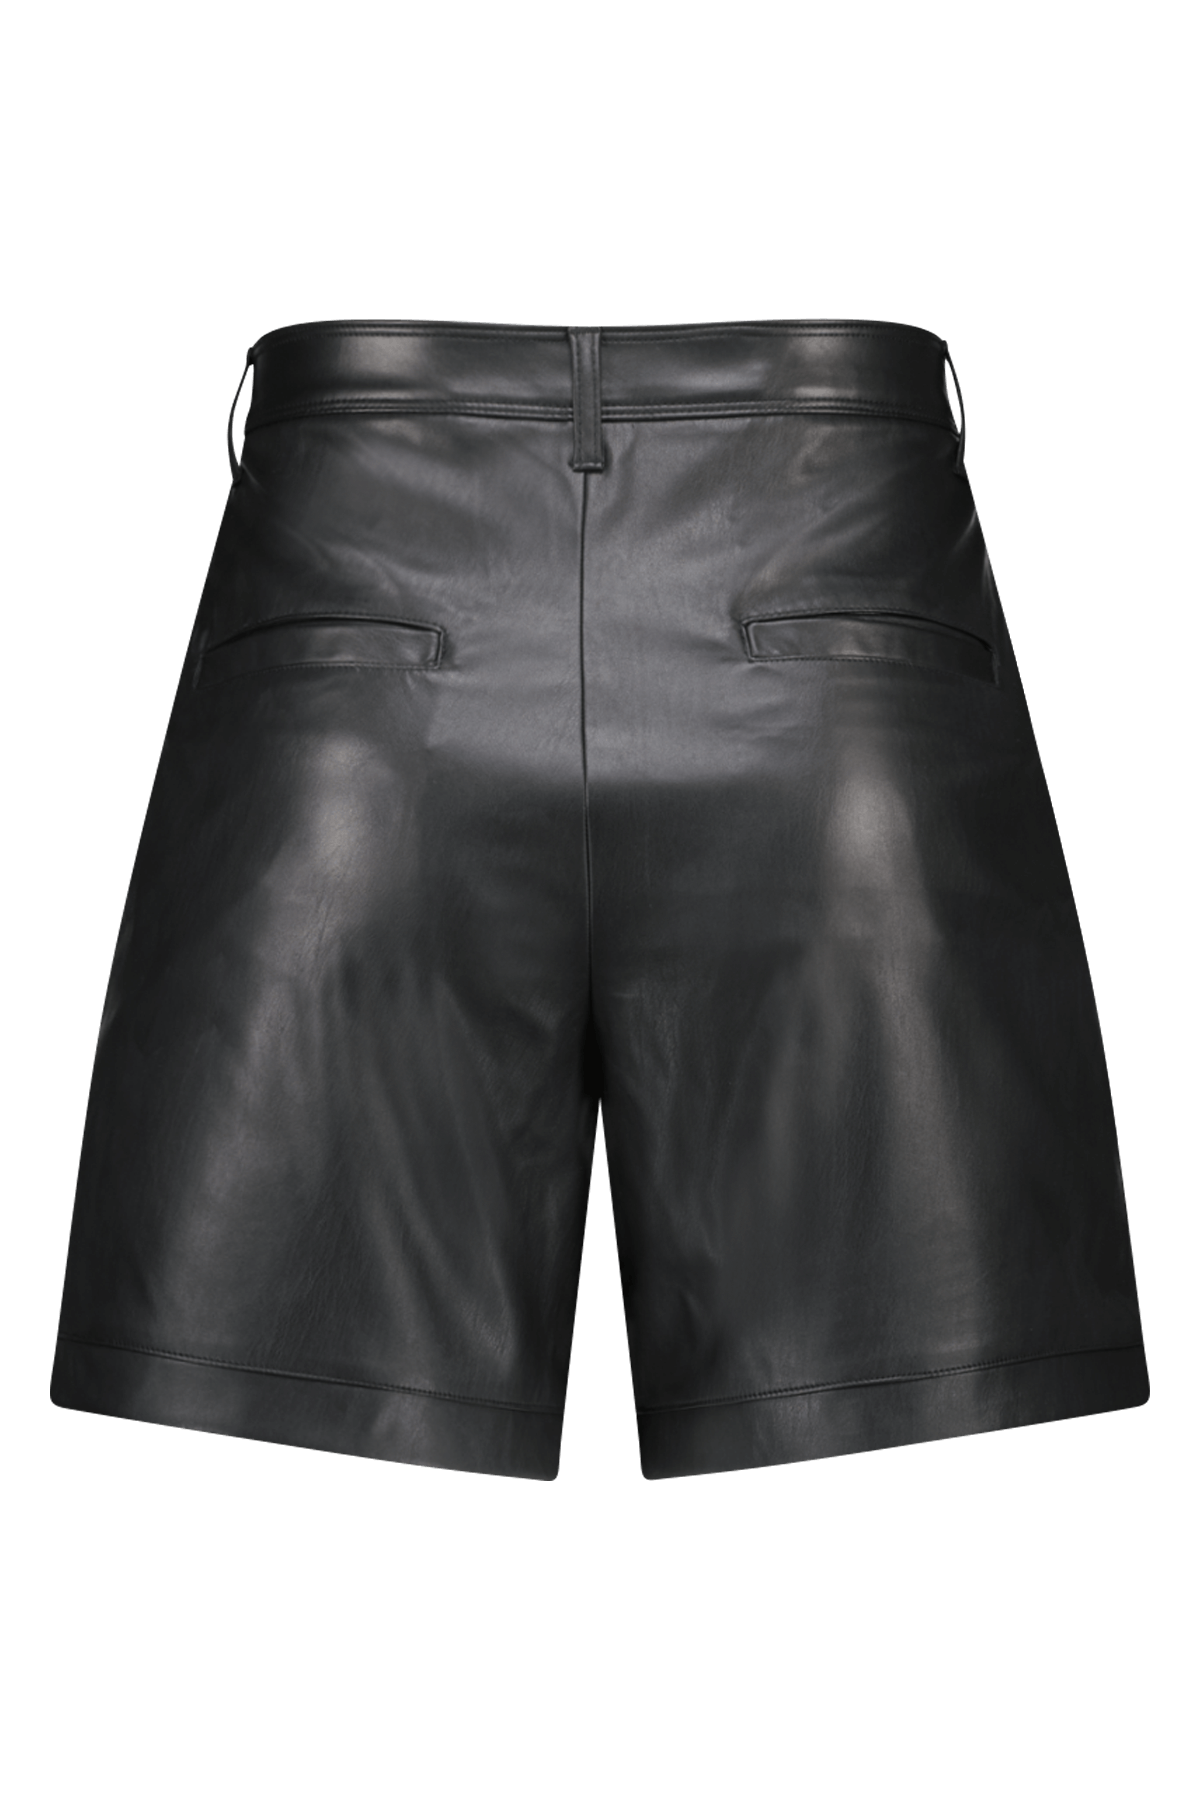 Shorts de cuero sintético image 2